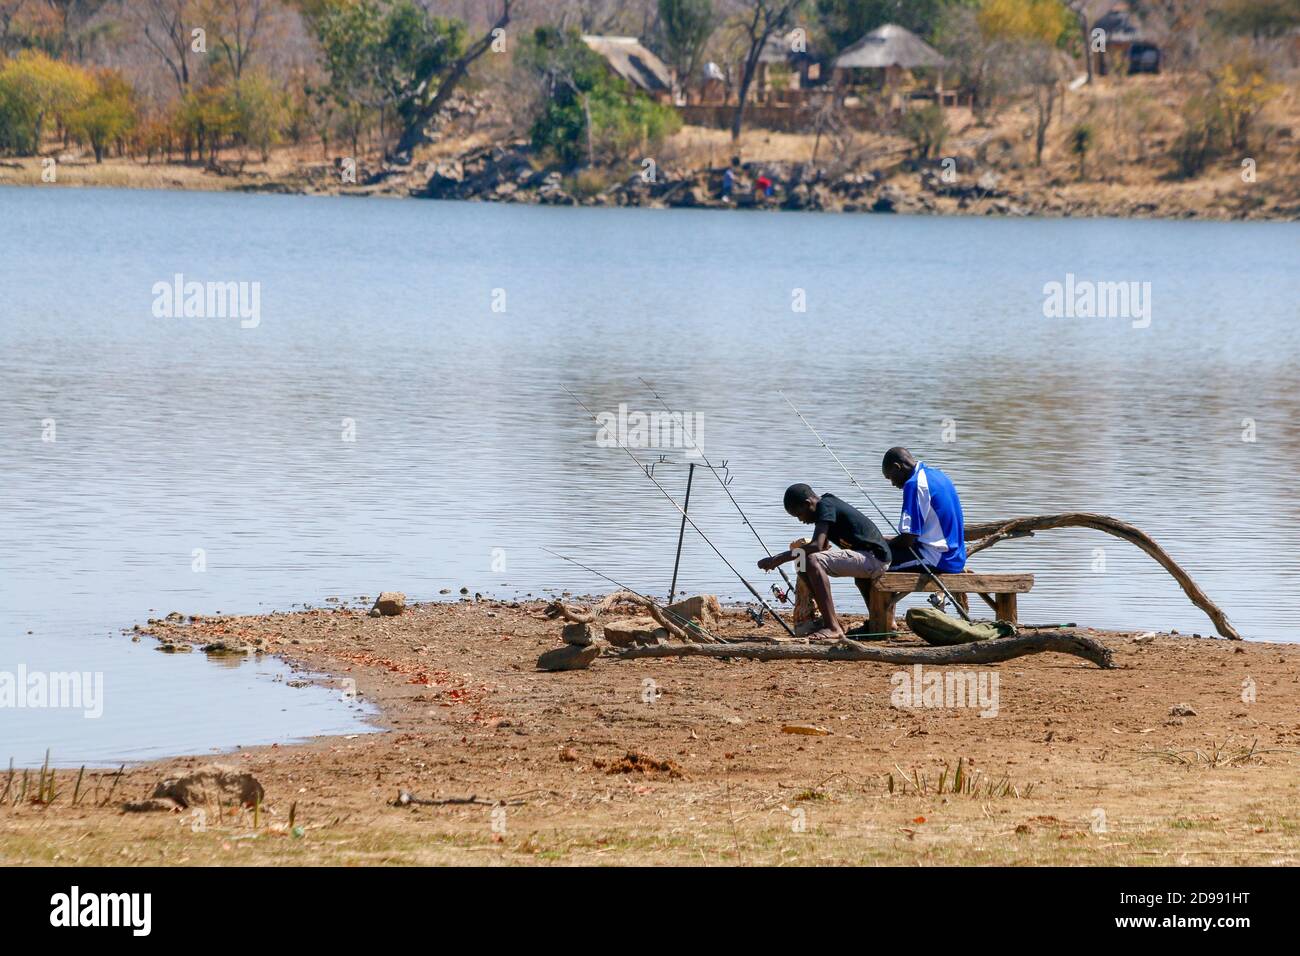 People fishing with fishing rods at a lake. Zimbabwe. Stock Photo